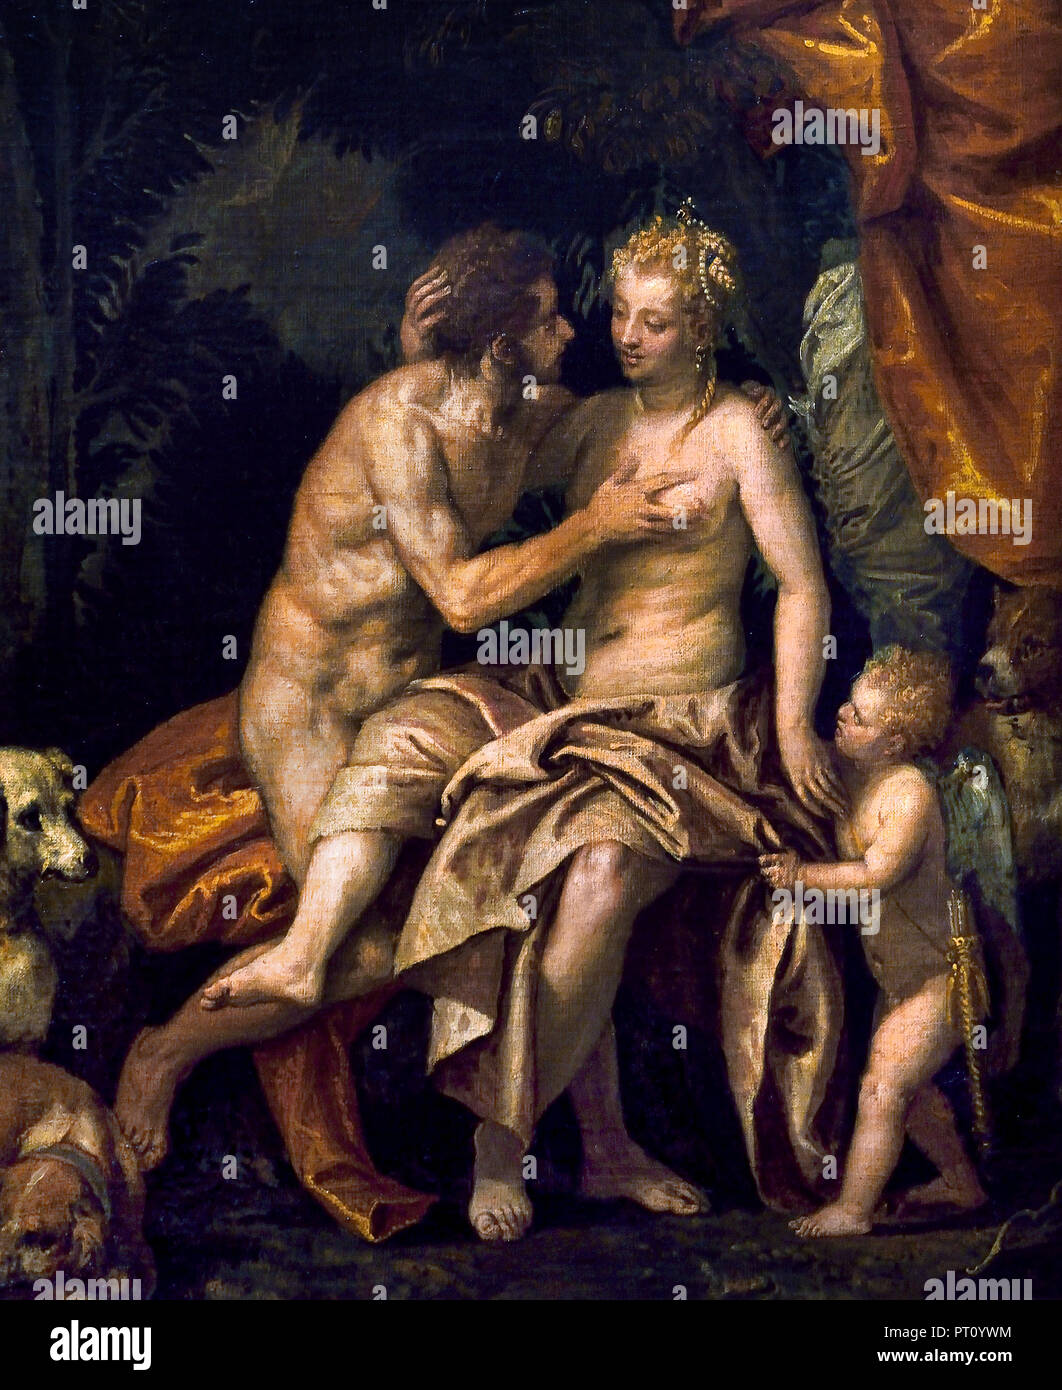 Vénus et Adonis 1586 par Paolo Caliari, connu sous le nom de Paolo Veronese (1528-1588), était un peintre italien de la Renaissance, Venise, Italie. ( Percé par la flèche de Cupidon Vénus, déesse de l'amour, était tombé en amour avec le beau chasseur Adonis ) Banque D'Images